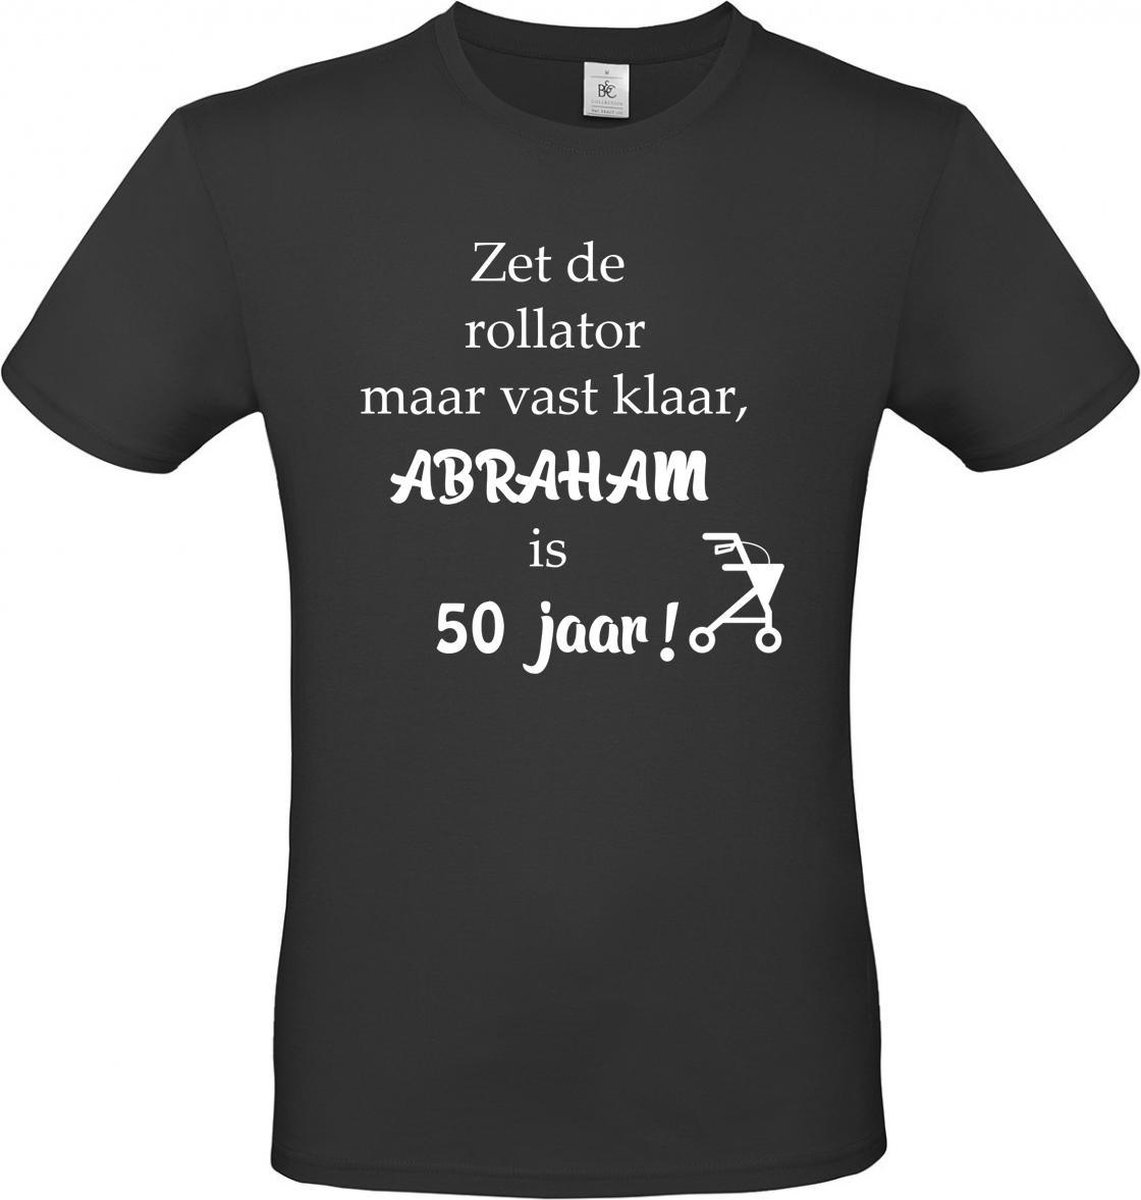 T-shirt met opdruk “Zet de rollator maar vast klaar Abraham is 50 jaar”, cadeautje voor Abraham 50 jaar..